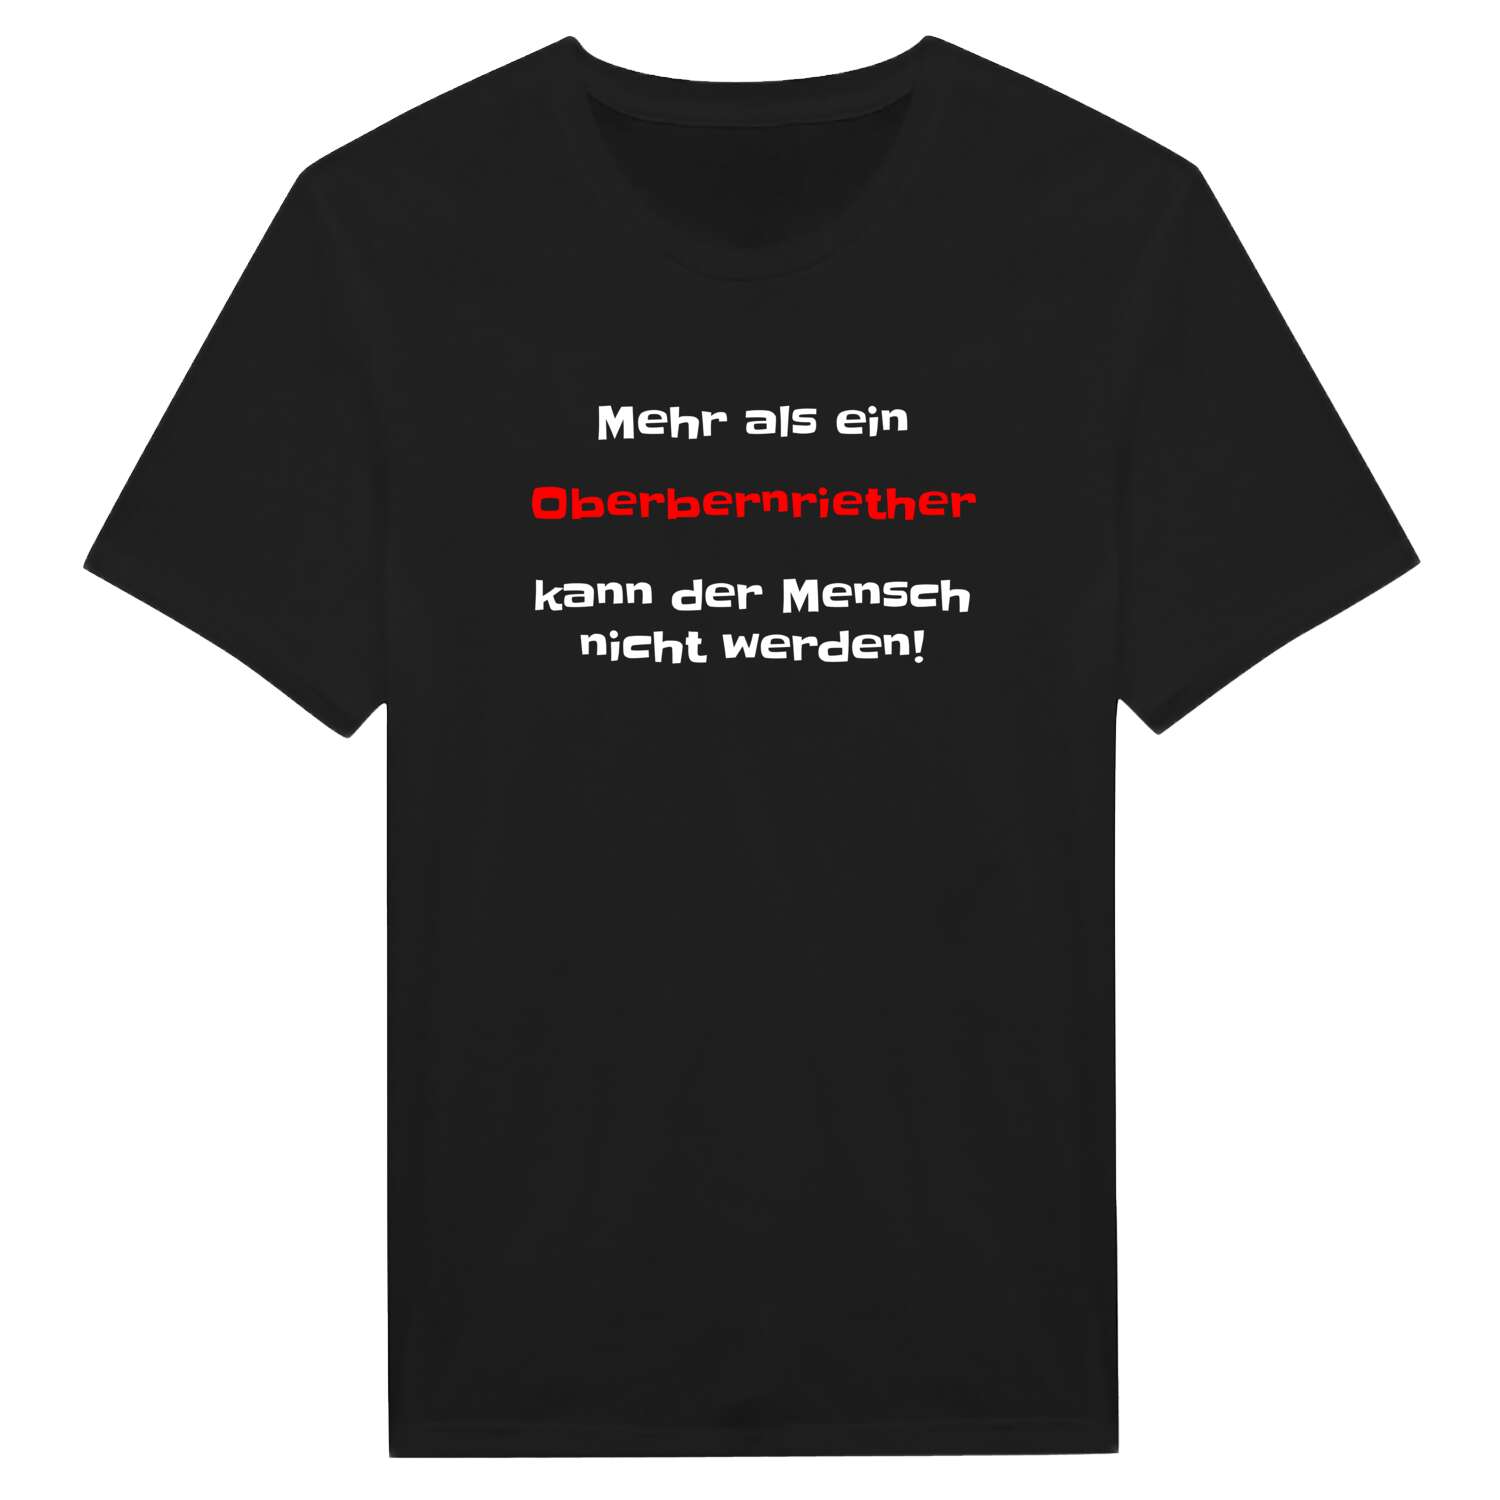 Oberbernrieth T-Shirt »Mehr als ein«